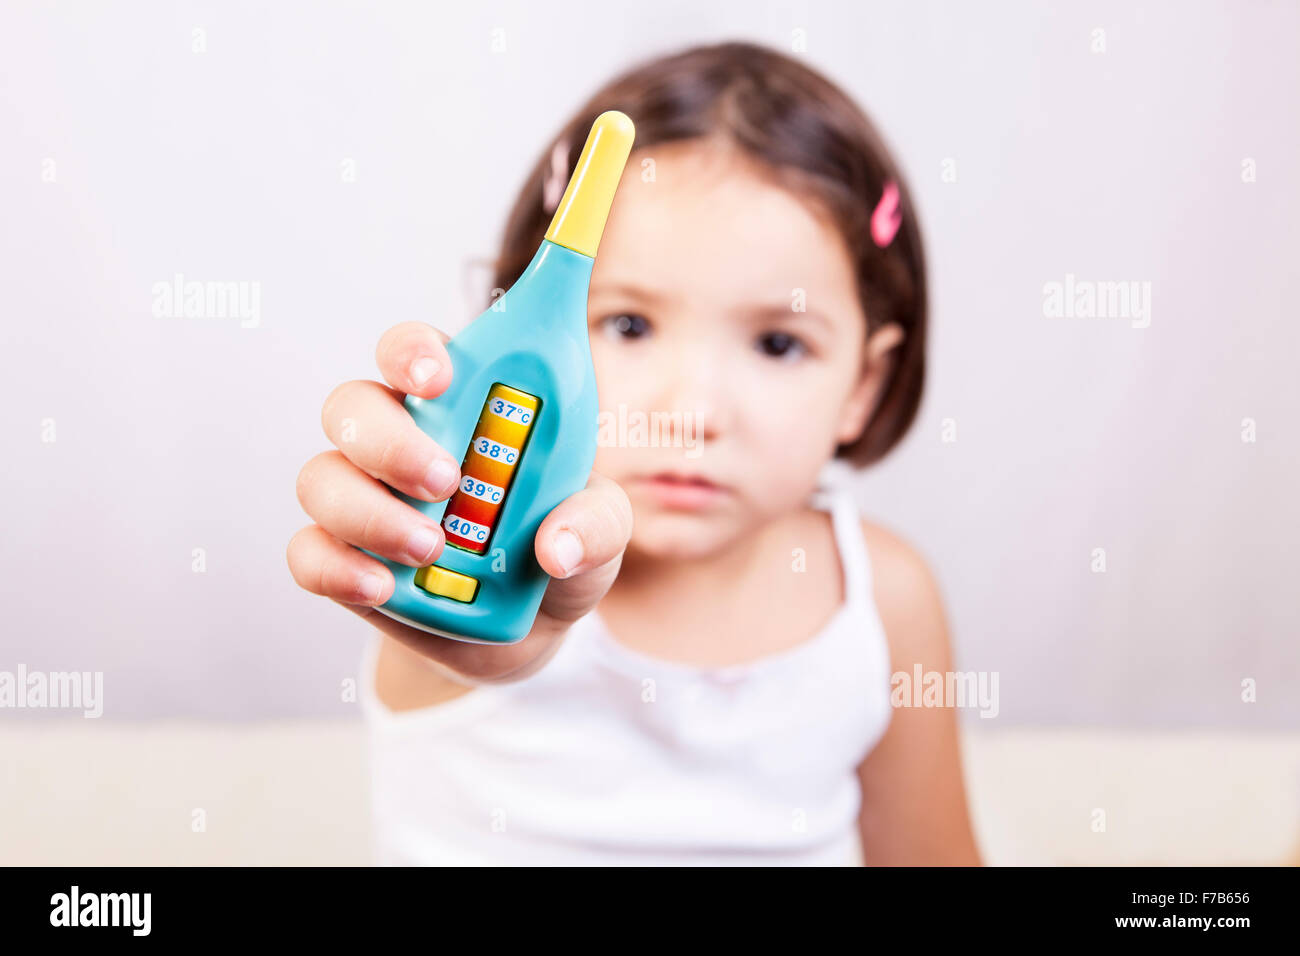 Cute little girl montrant un jouet thermomètre. Plus isolé sur fond blanc Banque D'Images